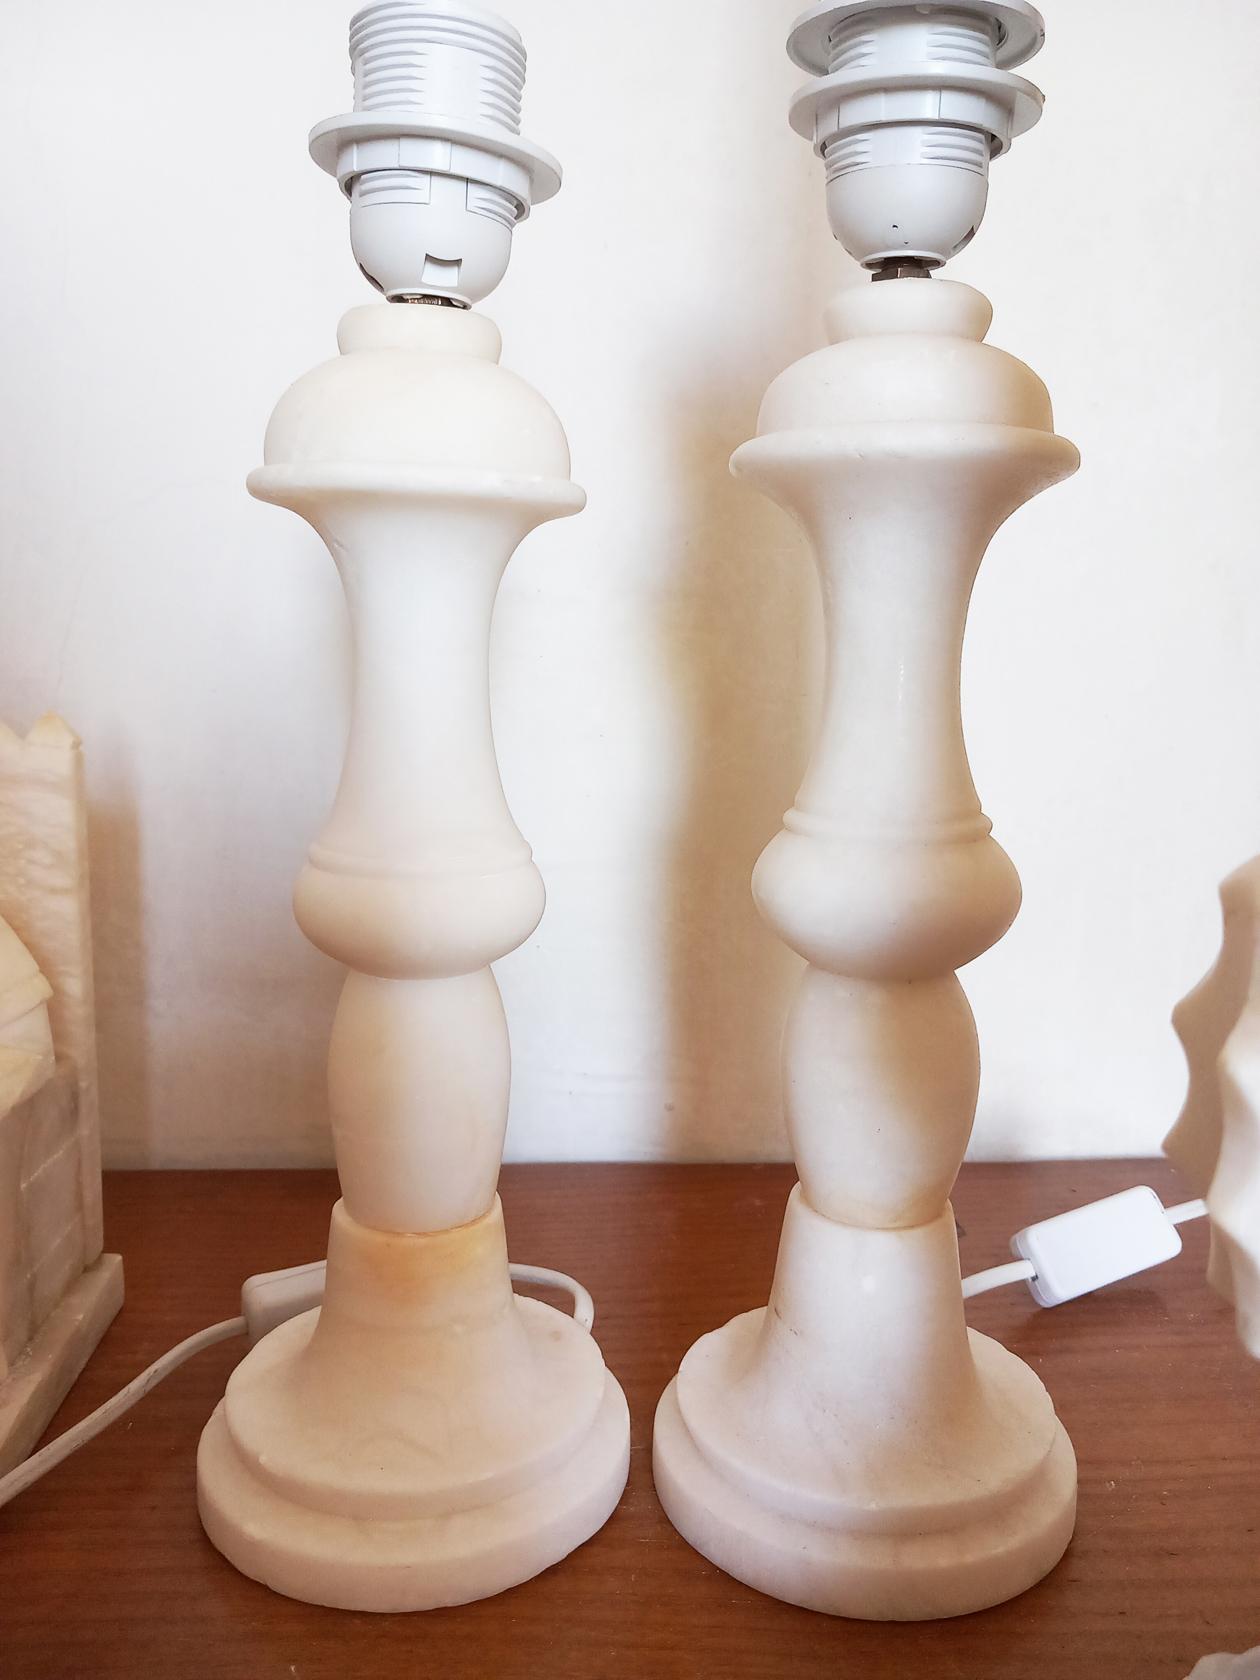 Tischlampen aus weißem Alabaster, in sehr gutem Zustand. Neuere Gebrauchte

Er eignet sich für einen Beistelltisch im Wohnzimmer oder einen Nachttisch.

Sie sind fast identisch, aber nicht exakt. Der eine ist ein wenig größer als der andere. Diese